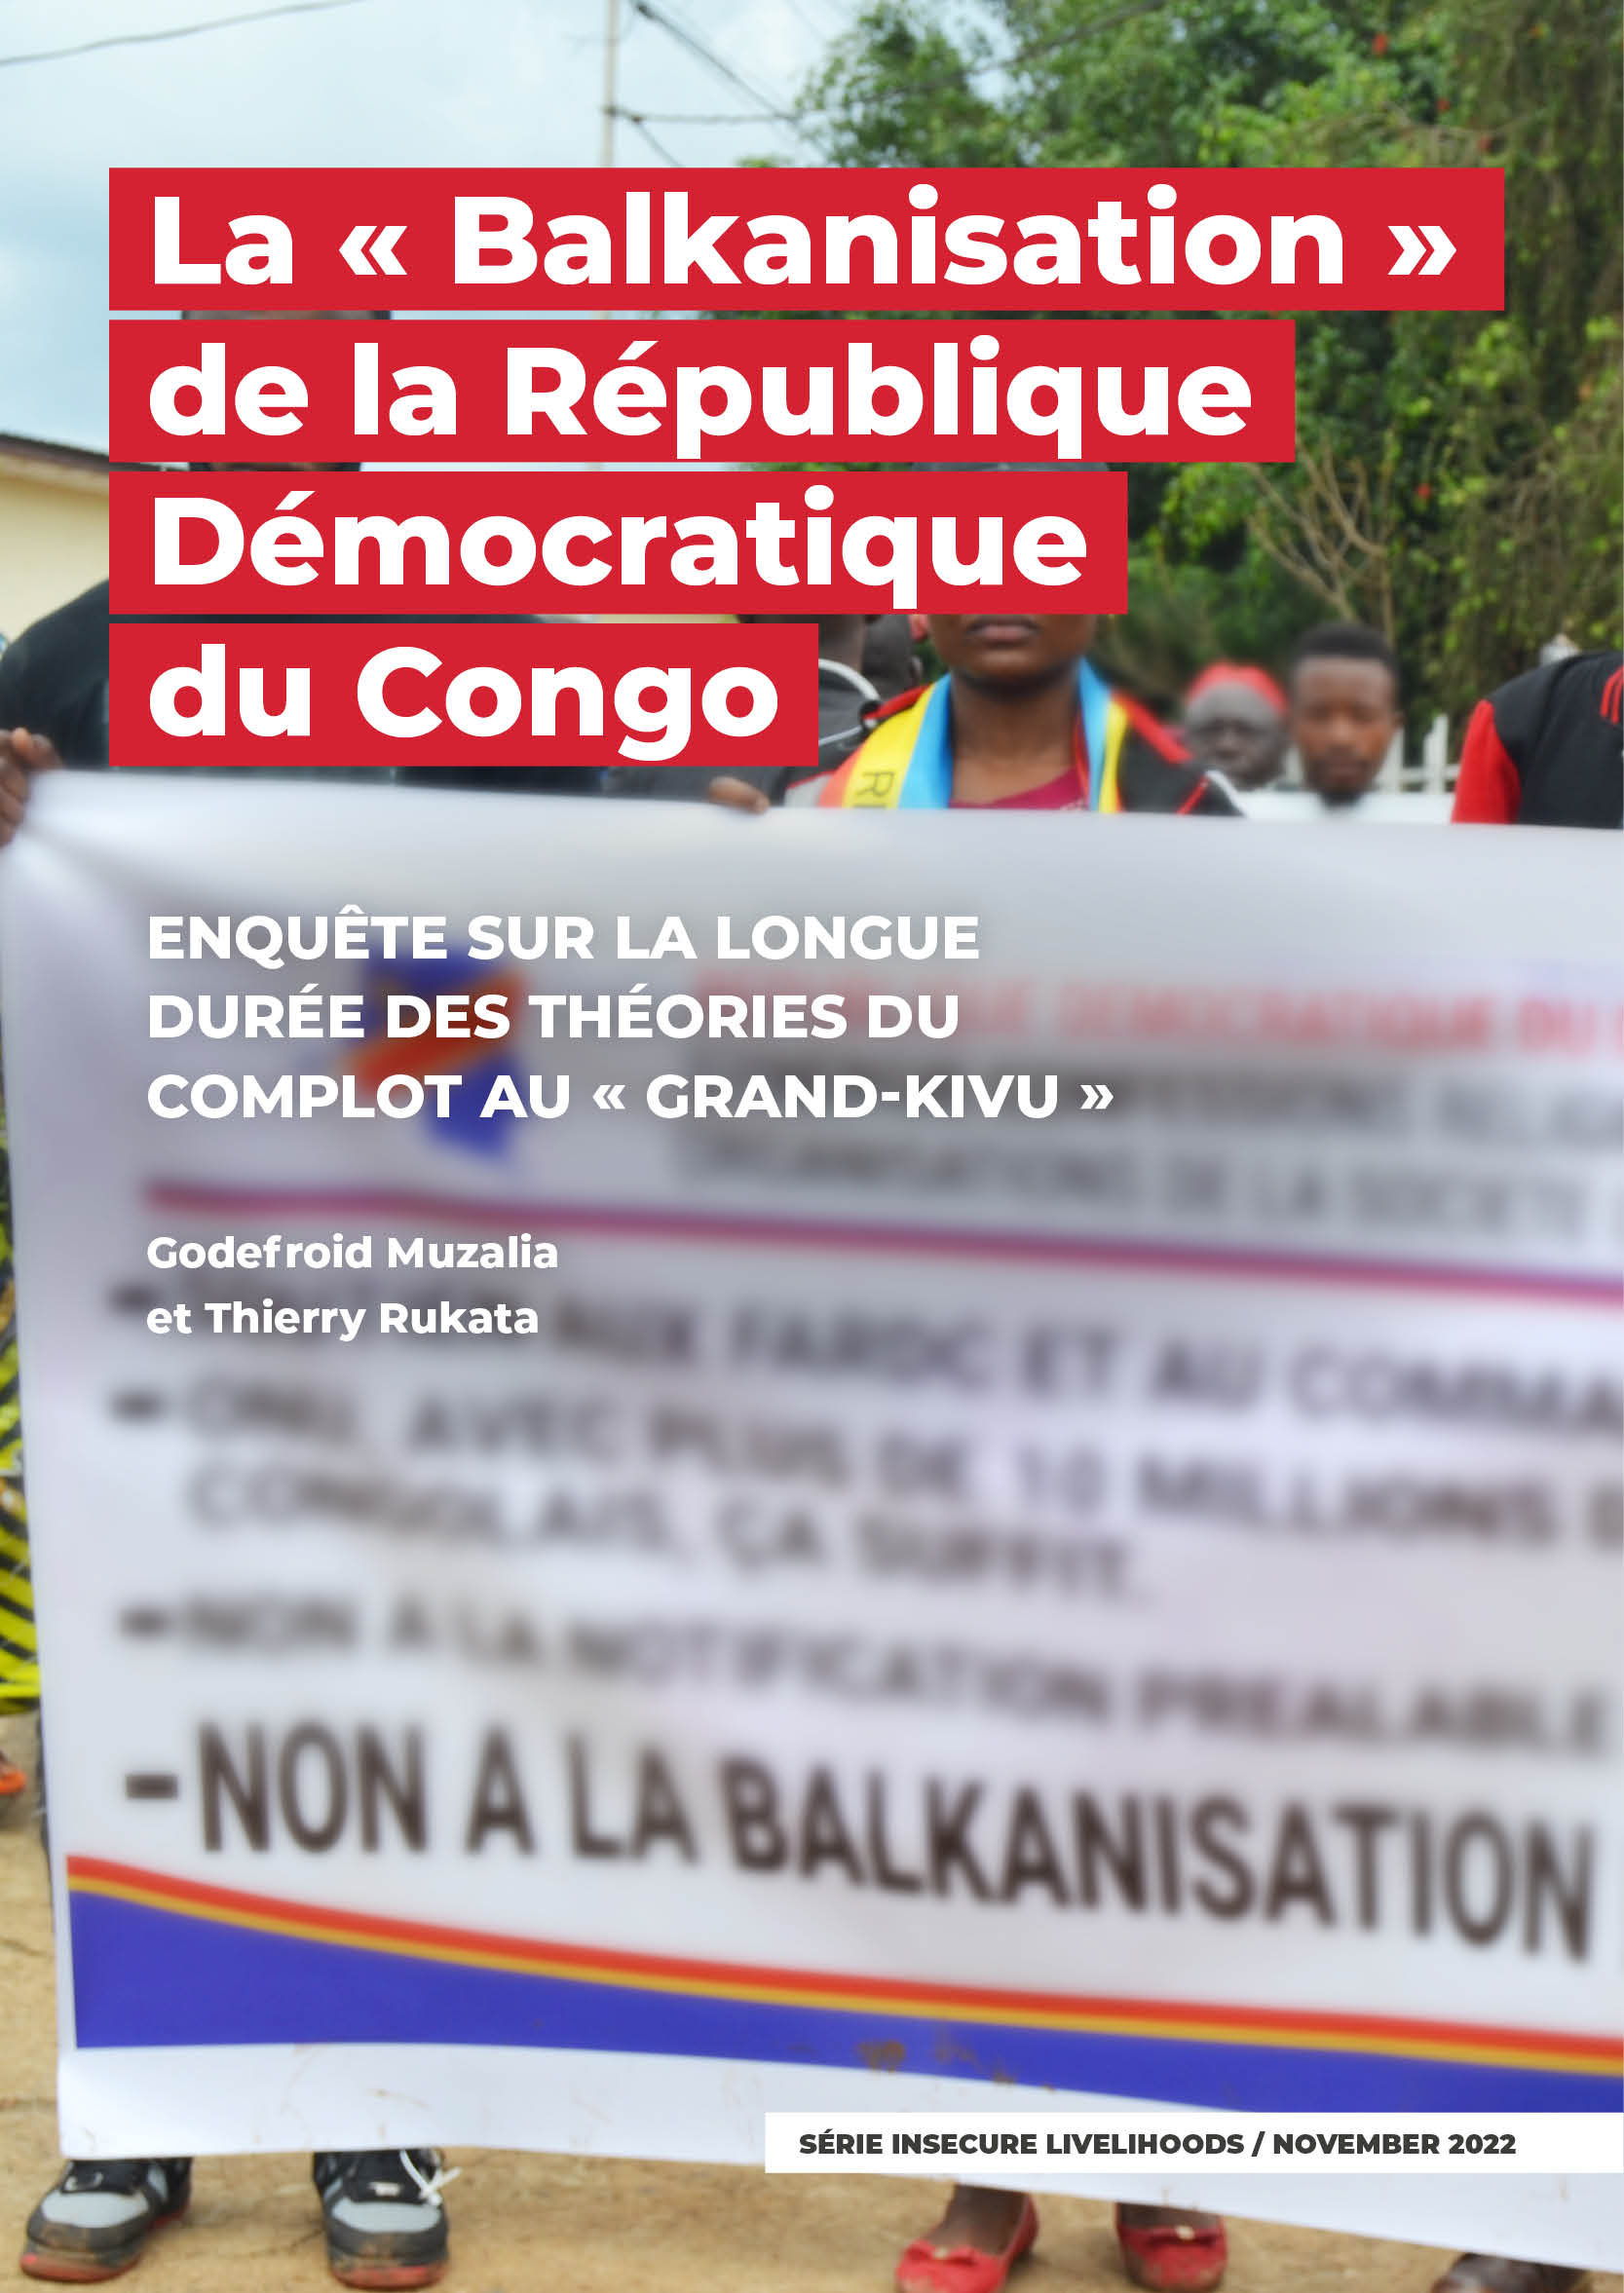 16_GIC_La « Balkanisation » de la République Démocratique du Congo_4